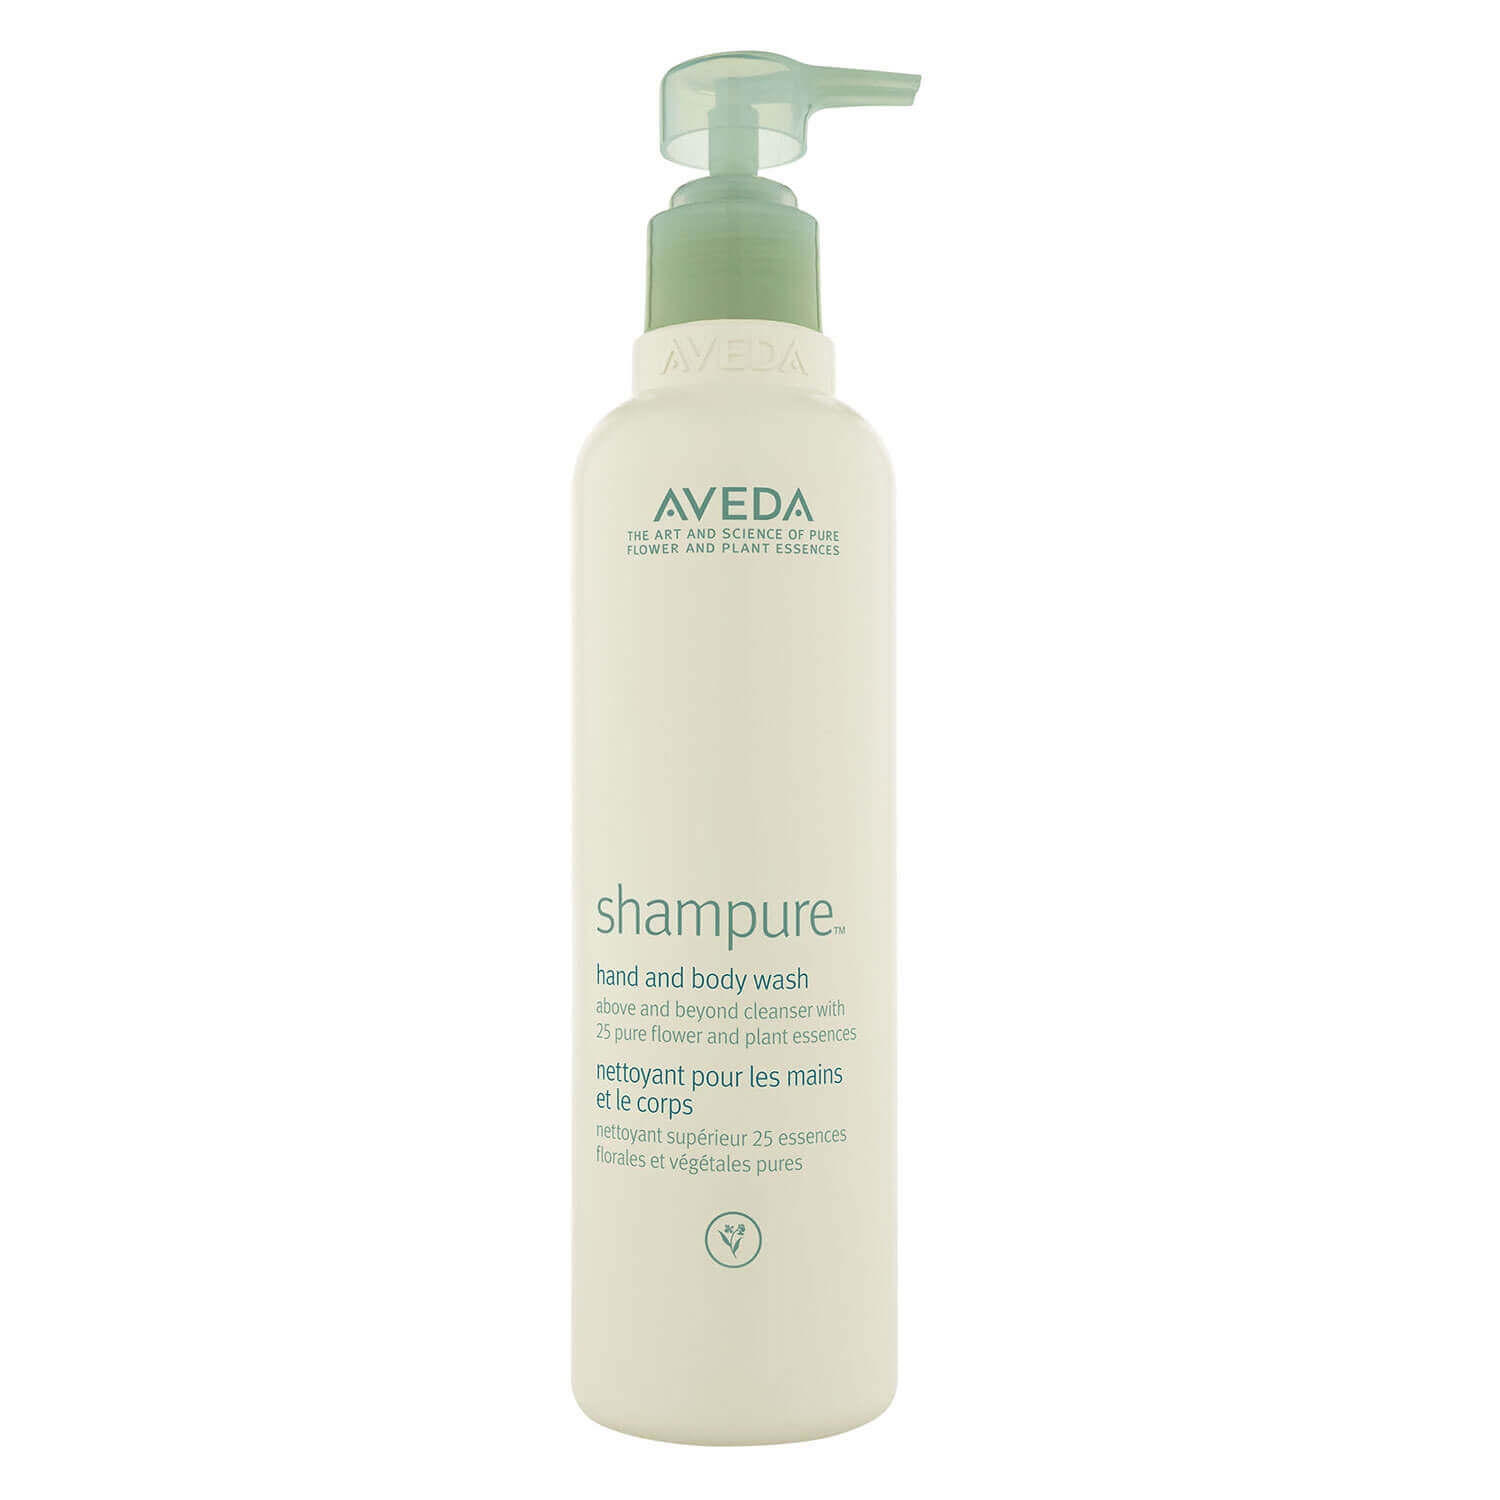 Produktbild von shampure - hand & body wash